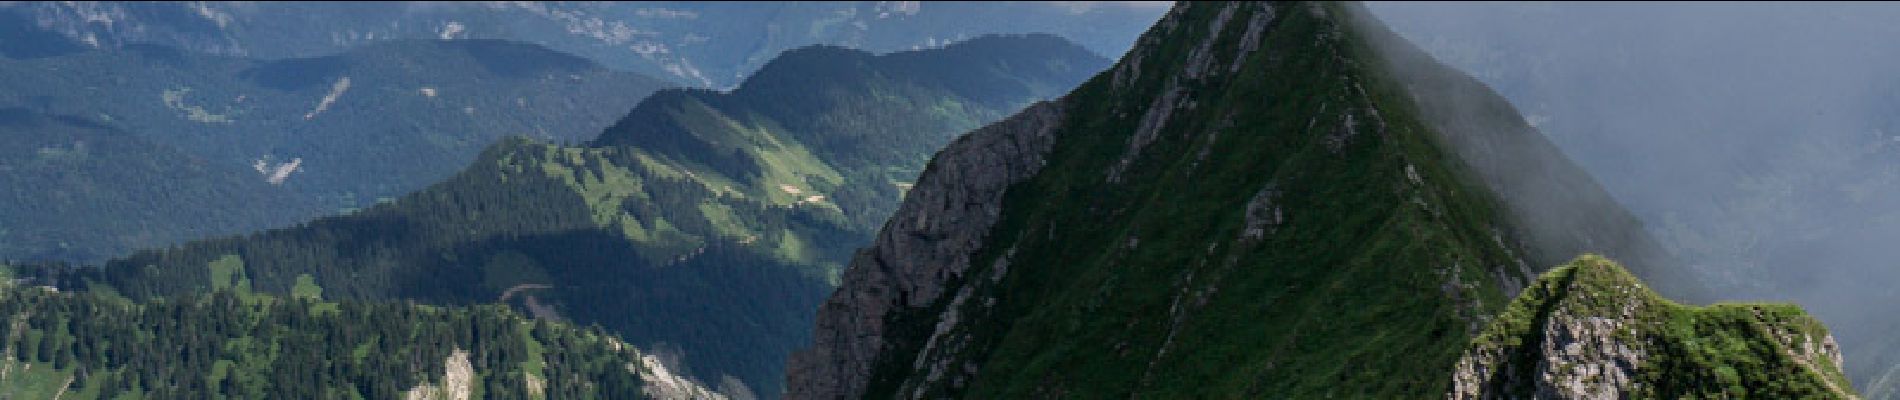 Percorso Marcia Bellevaux - Une traversée du Roc d''Enfer 2243 m, depuis la Chèvrerie - Photo